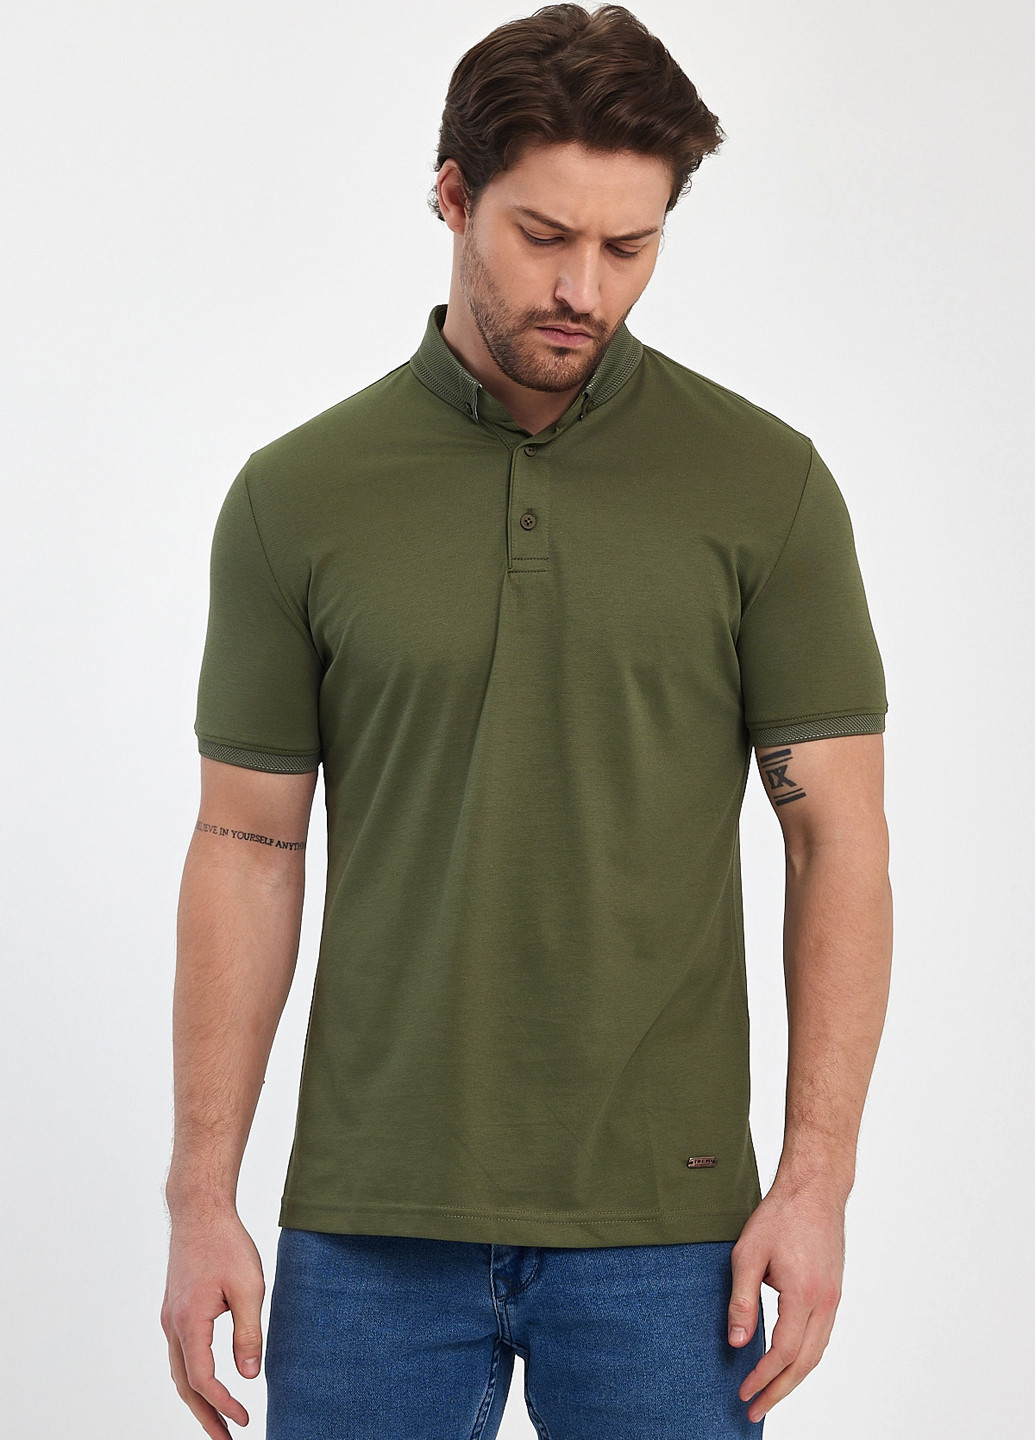 Оливковая (хаки) футболка-поло для мужчин Trend Collection однотонная